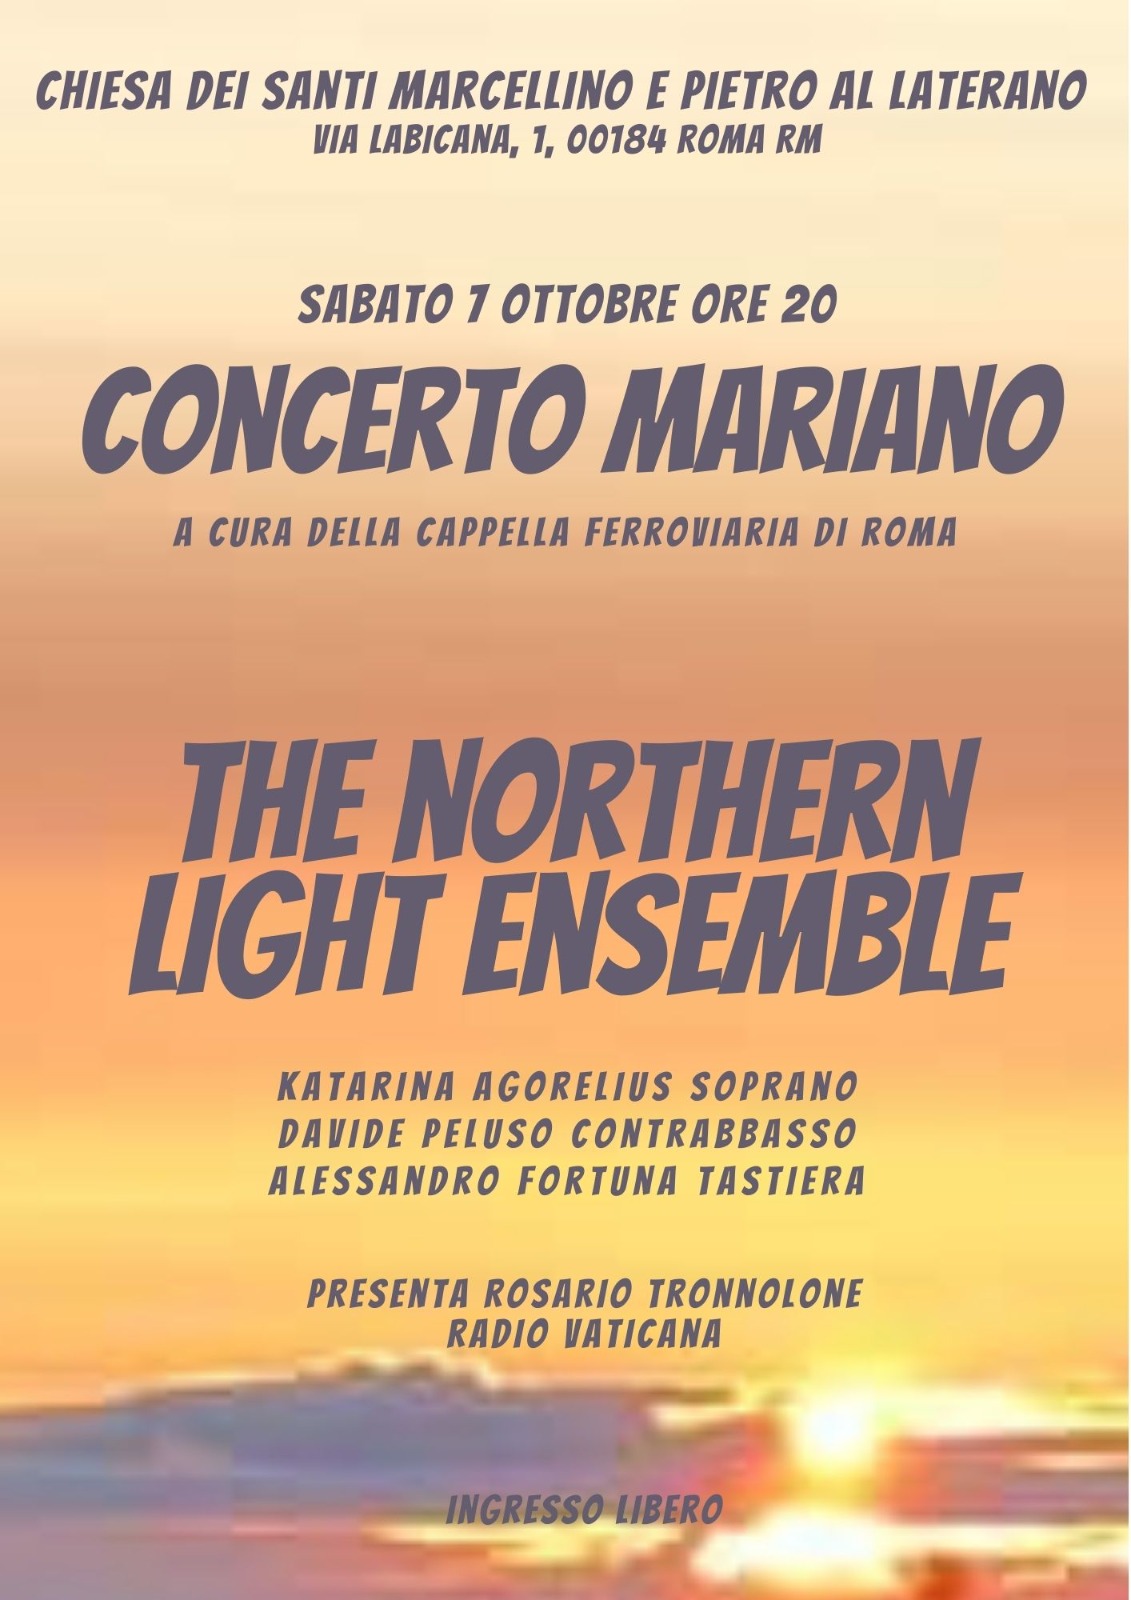 7 ottobre 2023 alle ore 20.00 concerto della soprano Katerina Agorelius